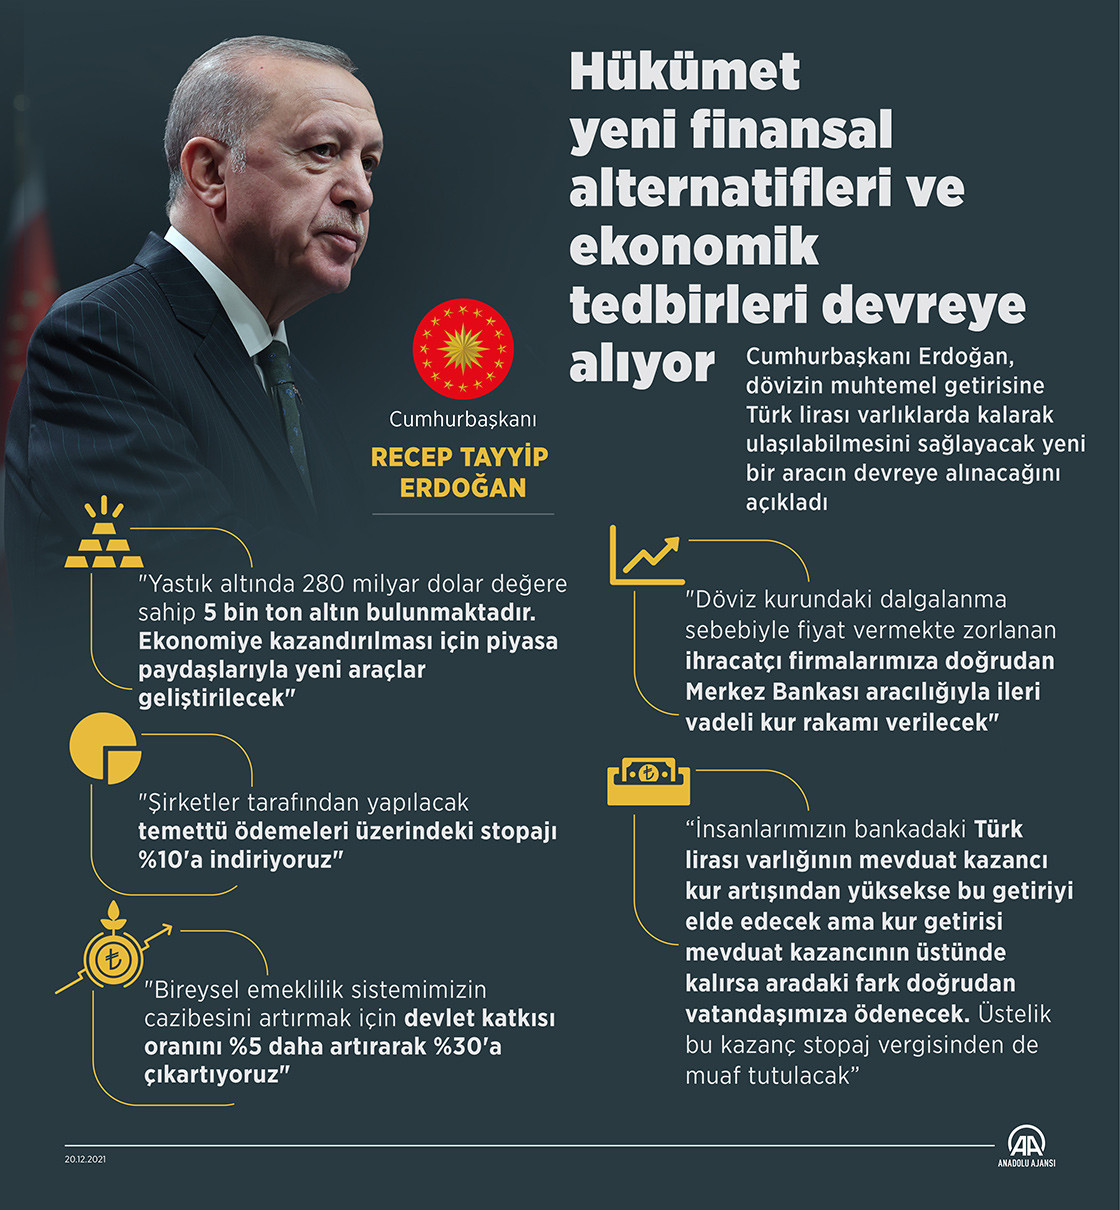 Dolar neden yükseliyor, Erdoğan ne açıkladı?